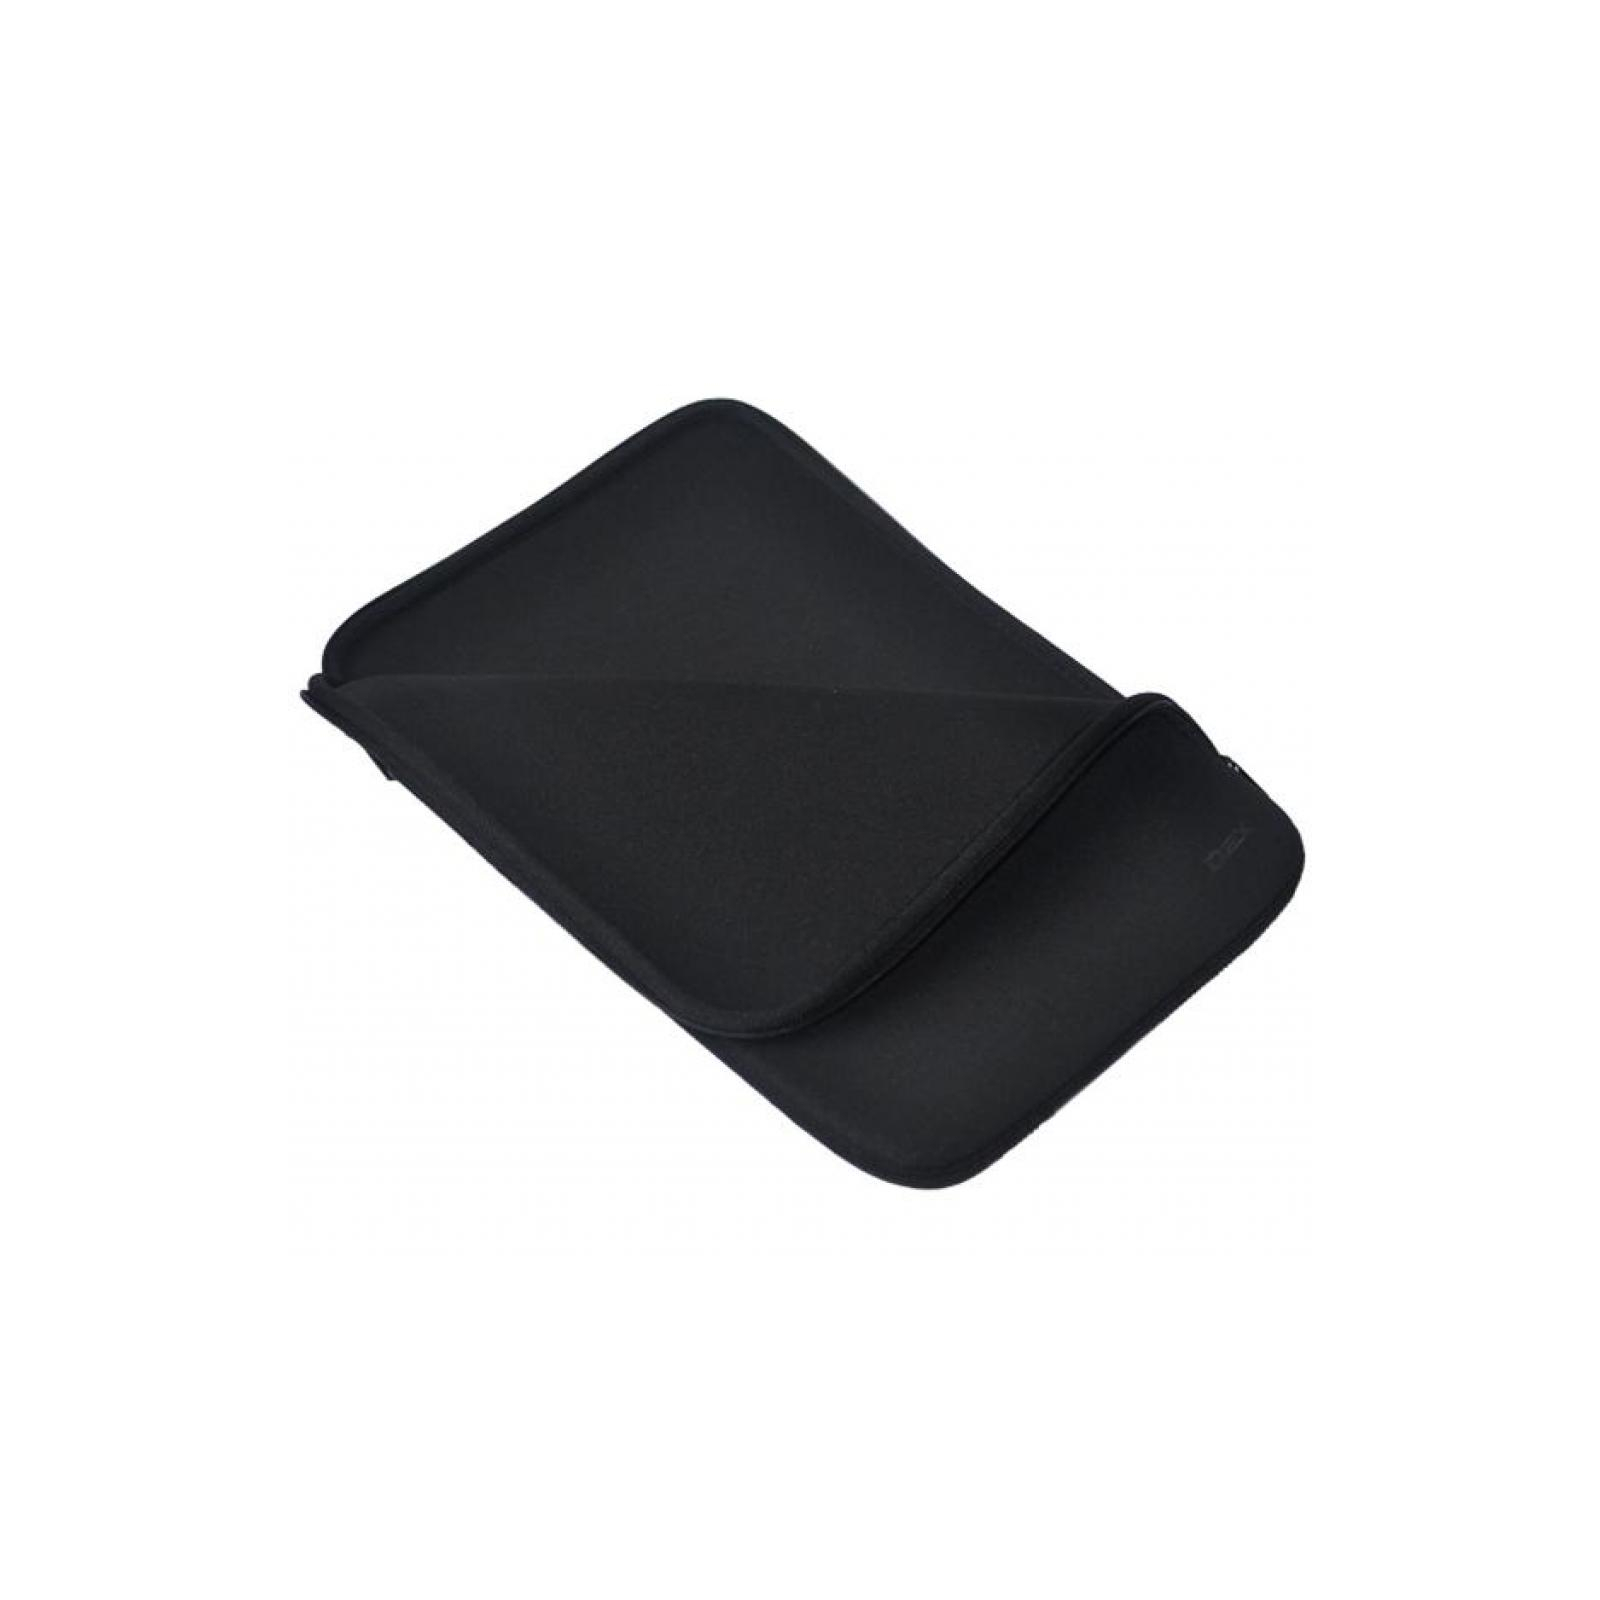 Чехол для планшета D-Lex 10' black 25*17*1.5 LXTC-3110-ВК (4372) изображение 3